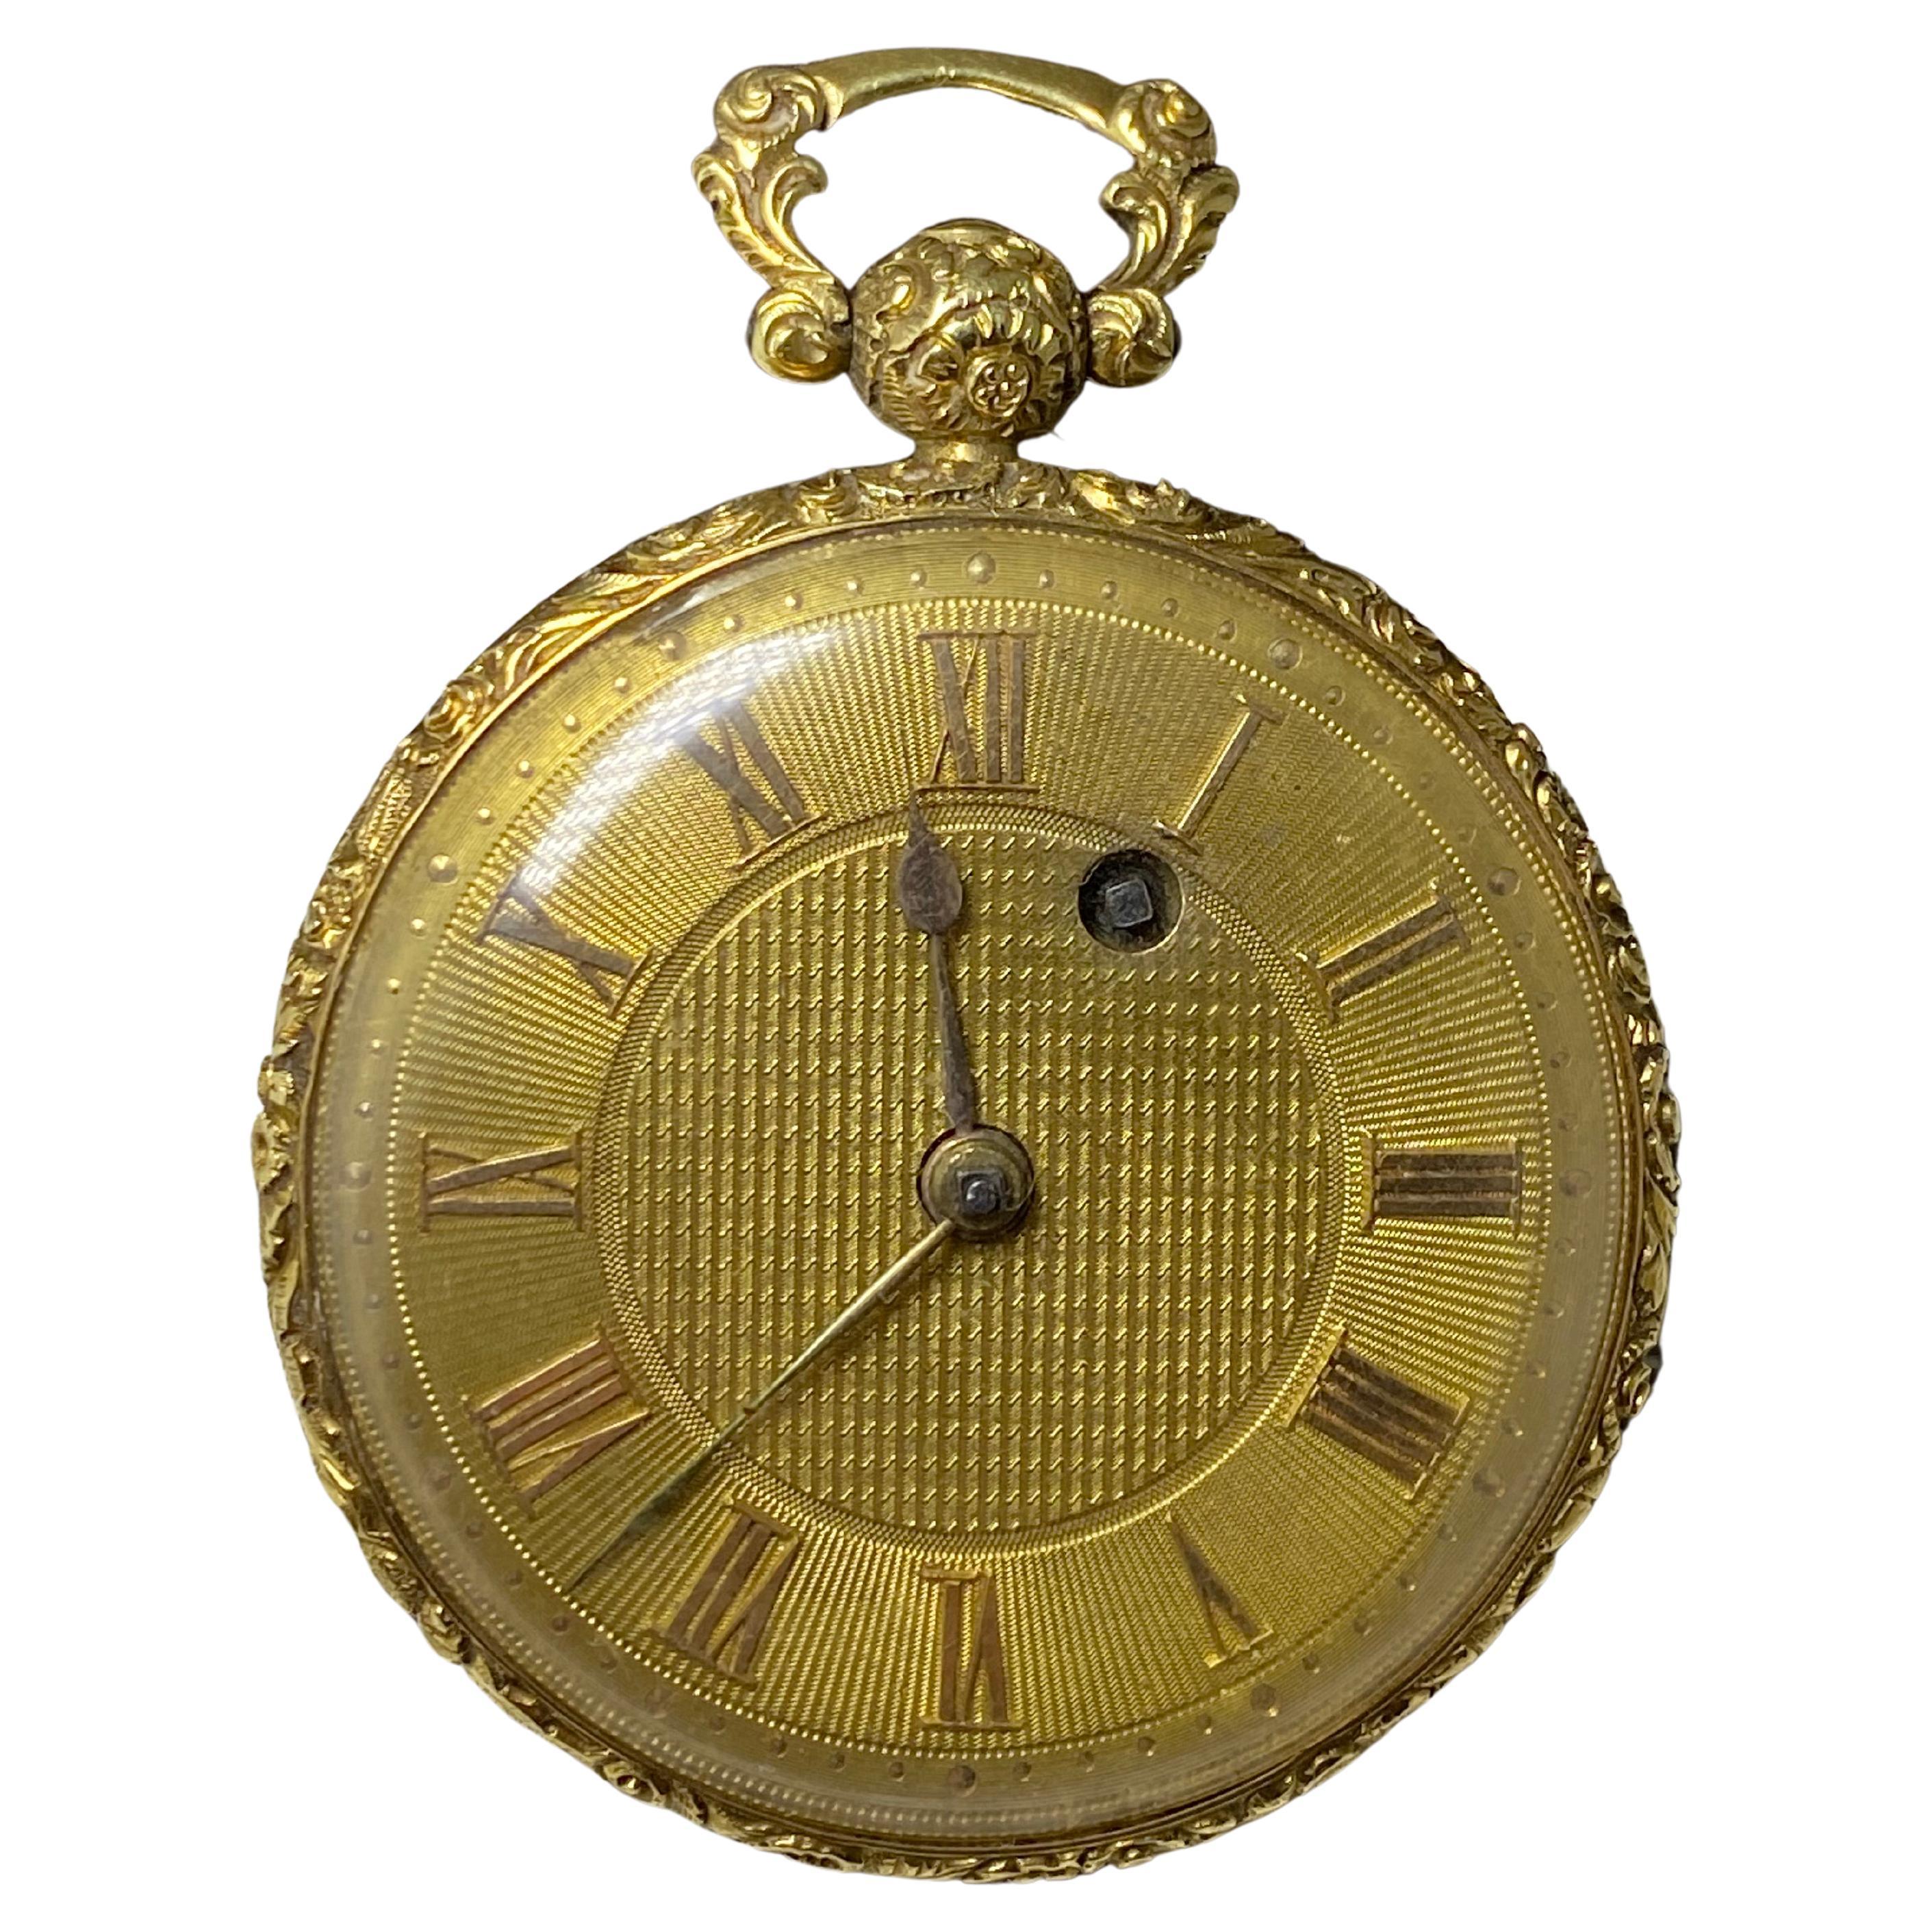 Fein & V Rare John Pace von Bury, London gepunzt c1827 18k Gold Taschenuhr